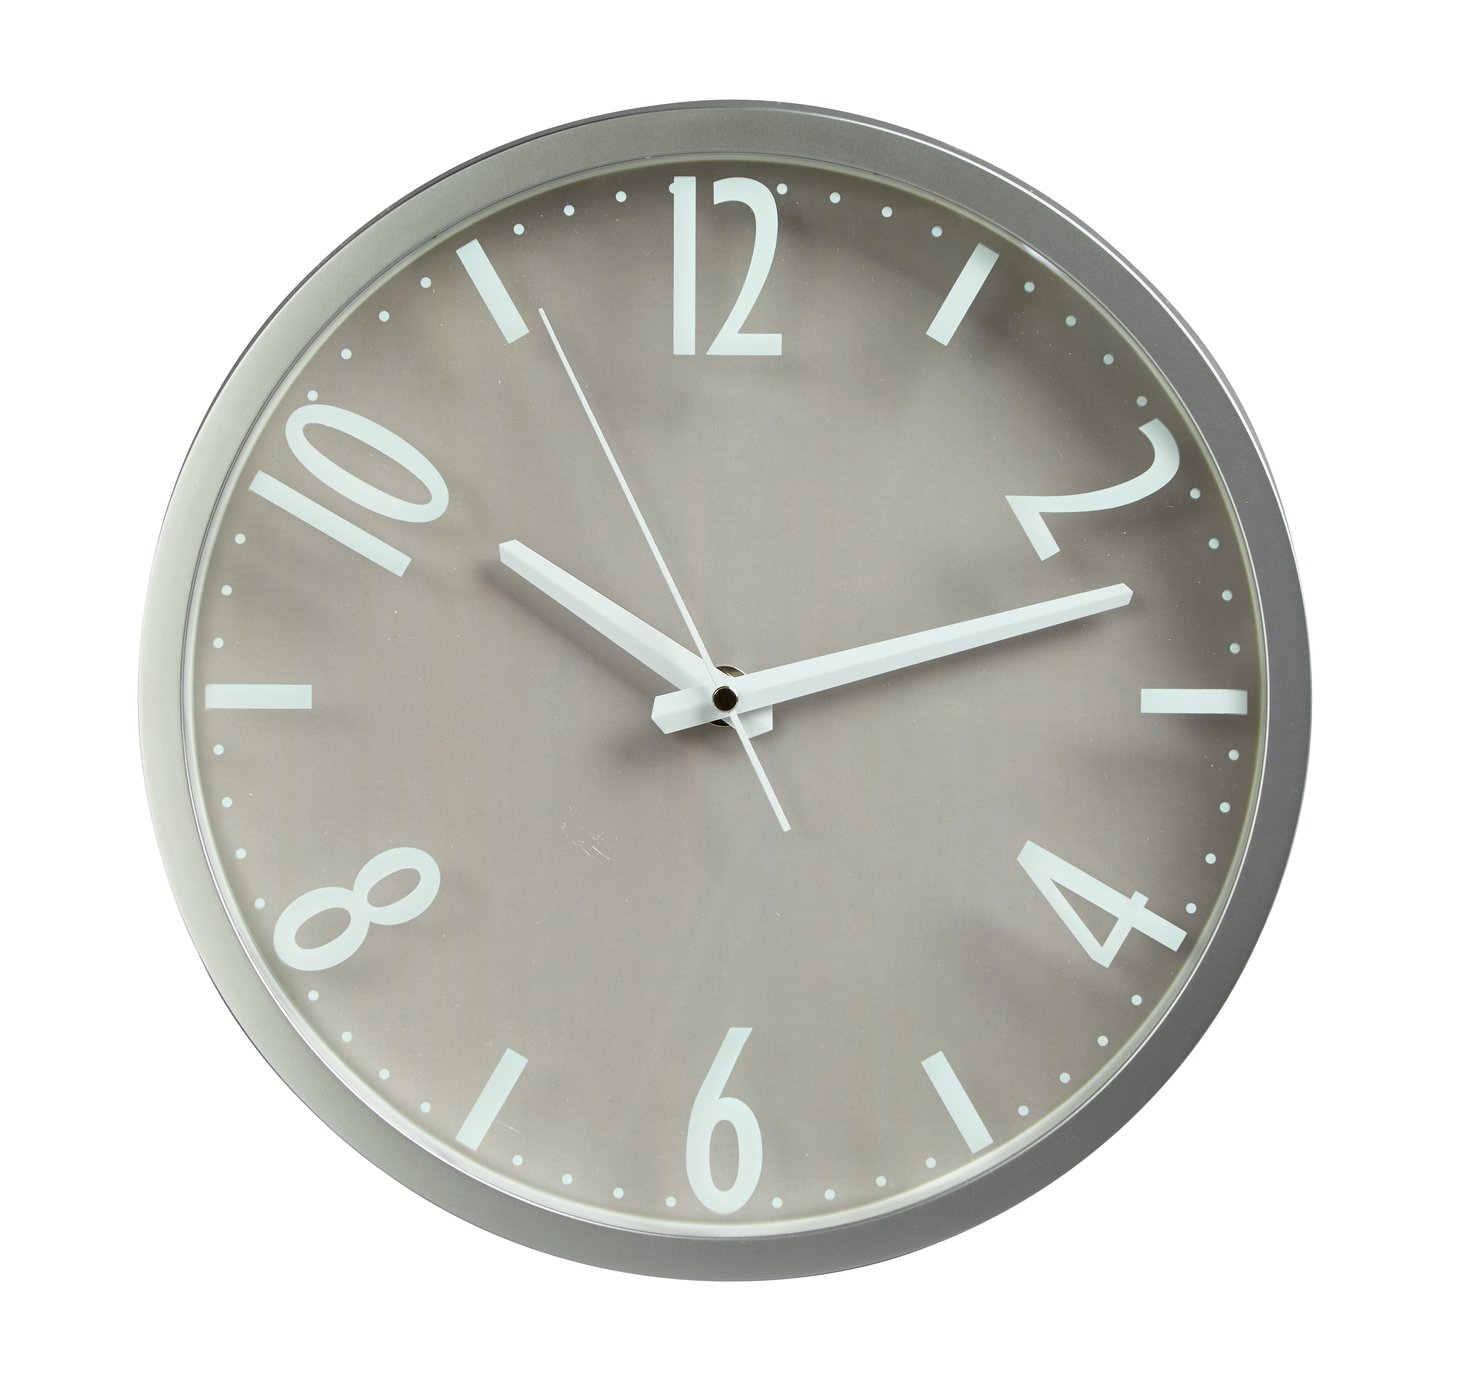 Argos Home Contemporary Wall Clock - Silver